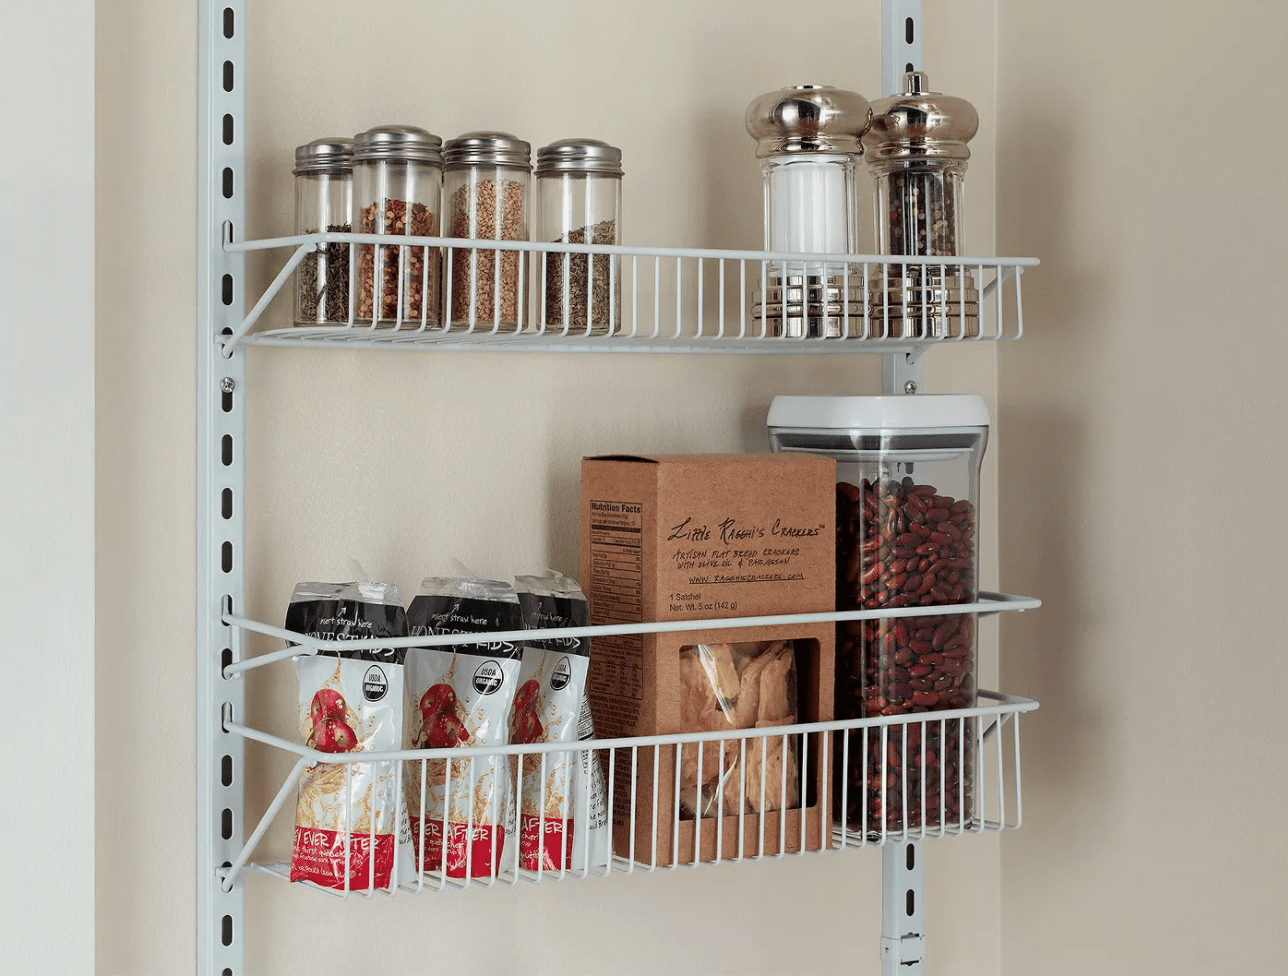 Over-the-door pantry storage